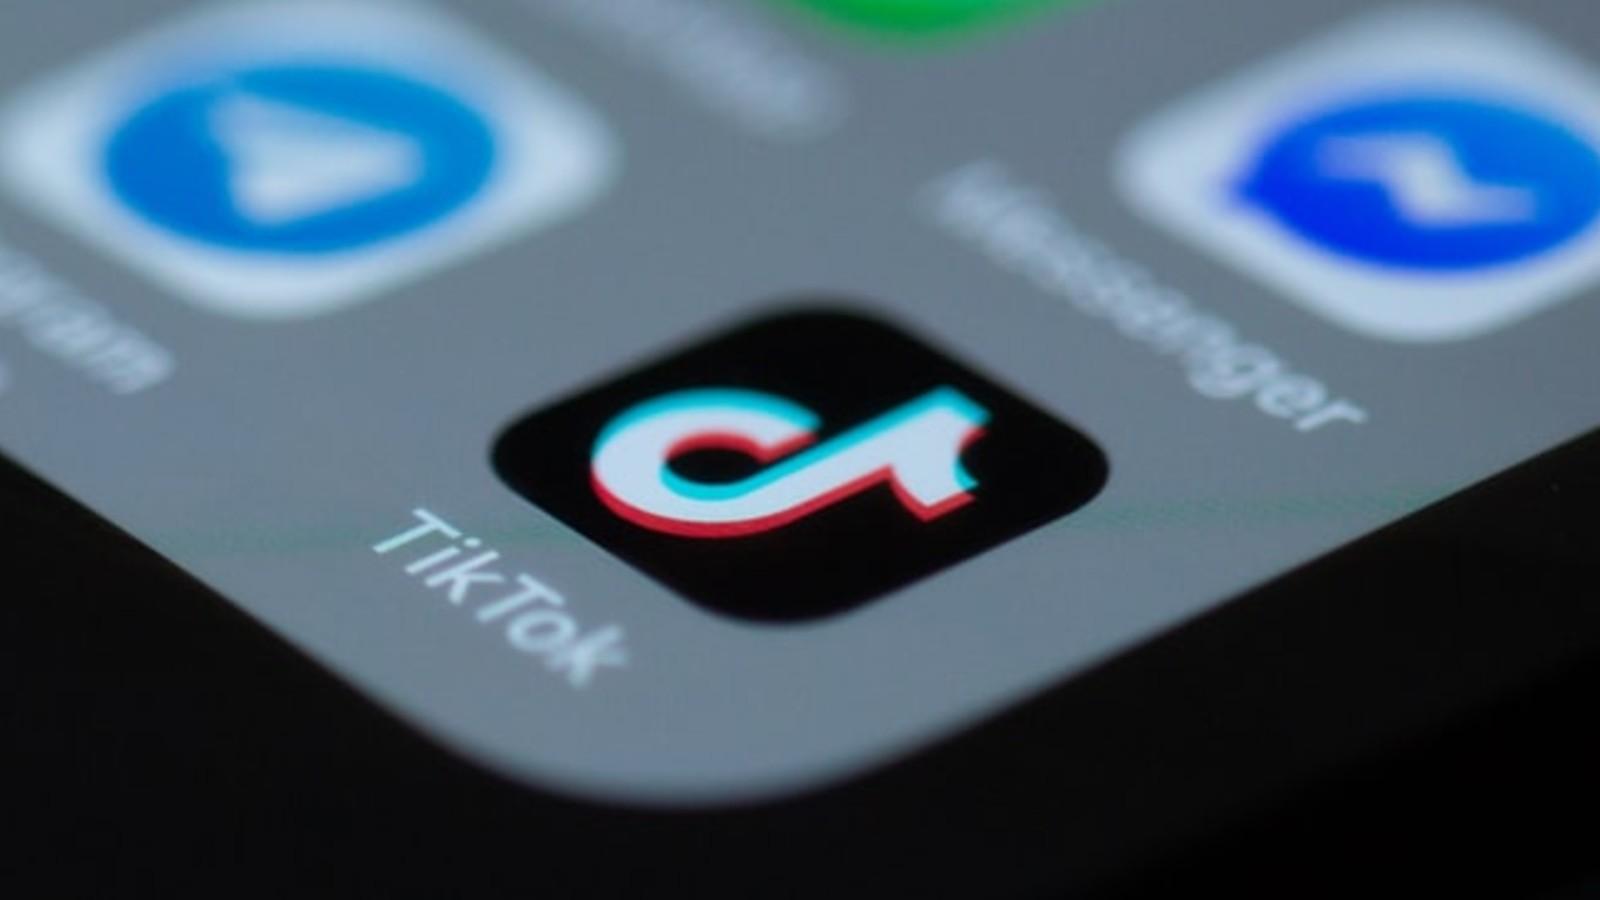 TikTok app logo on a phone